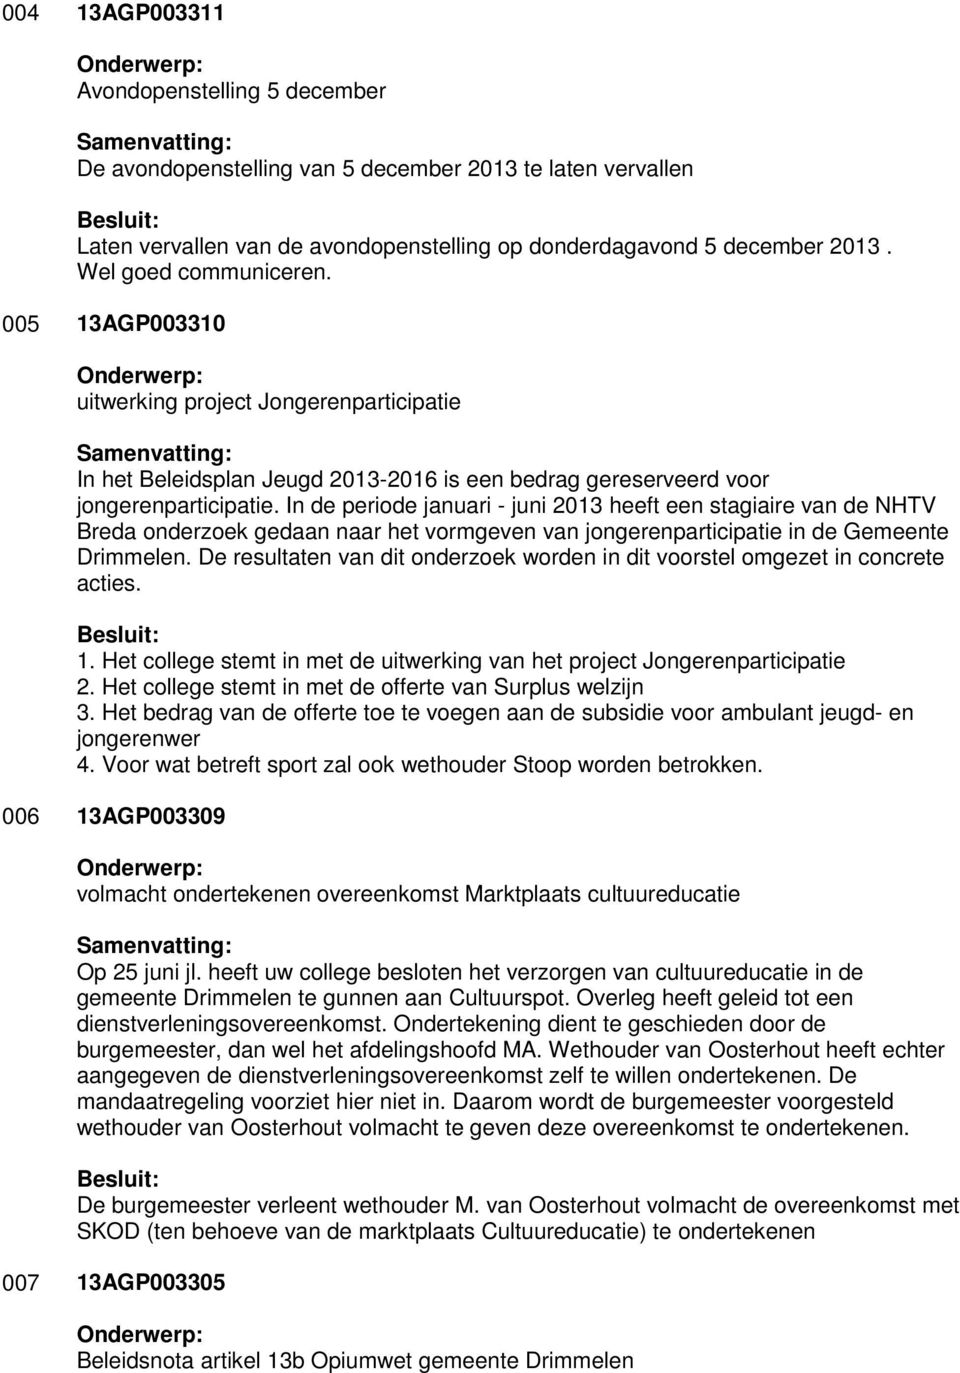 In de periode januari - juni 2013 heeft een stagiaire van de NHTV Breda onderzoek gedaan naar het vormgeven van jongerenparticipatie in de Gemeente Drimmelen.